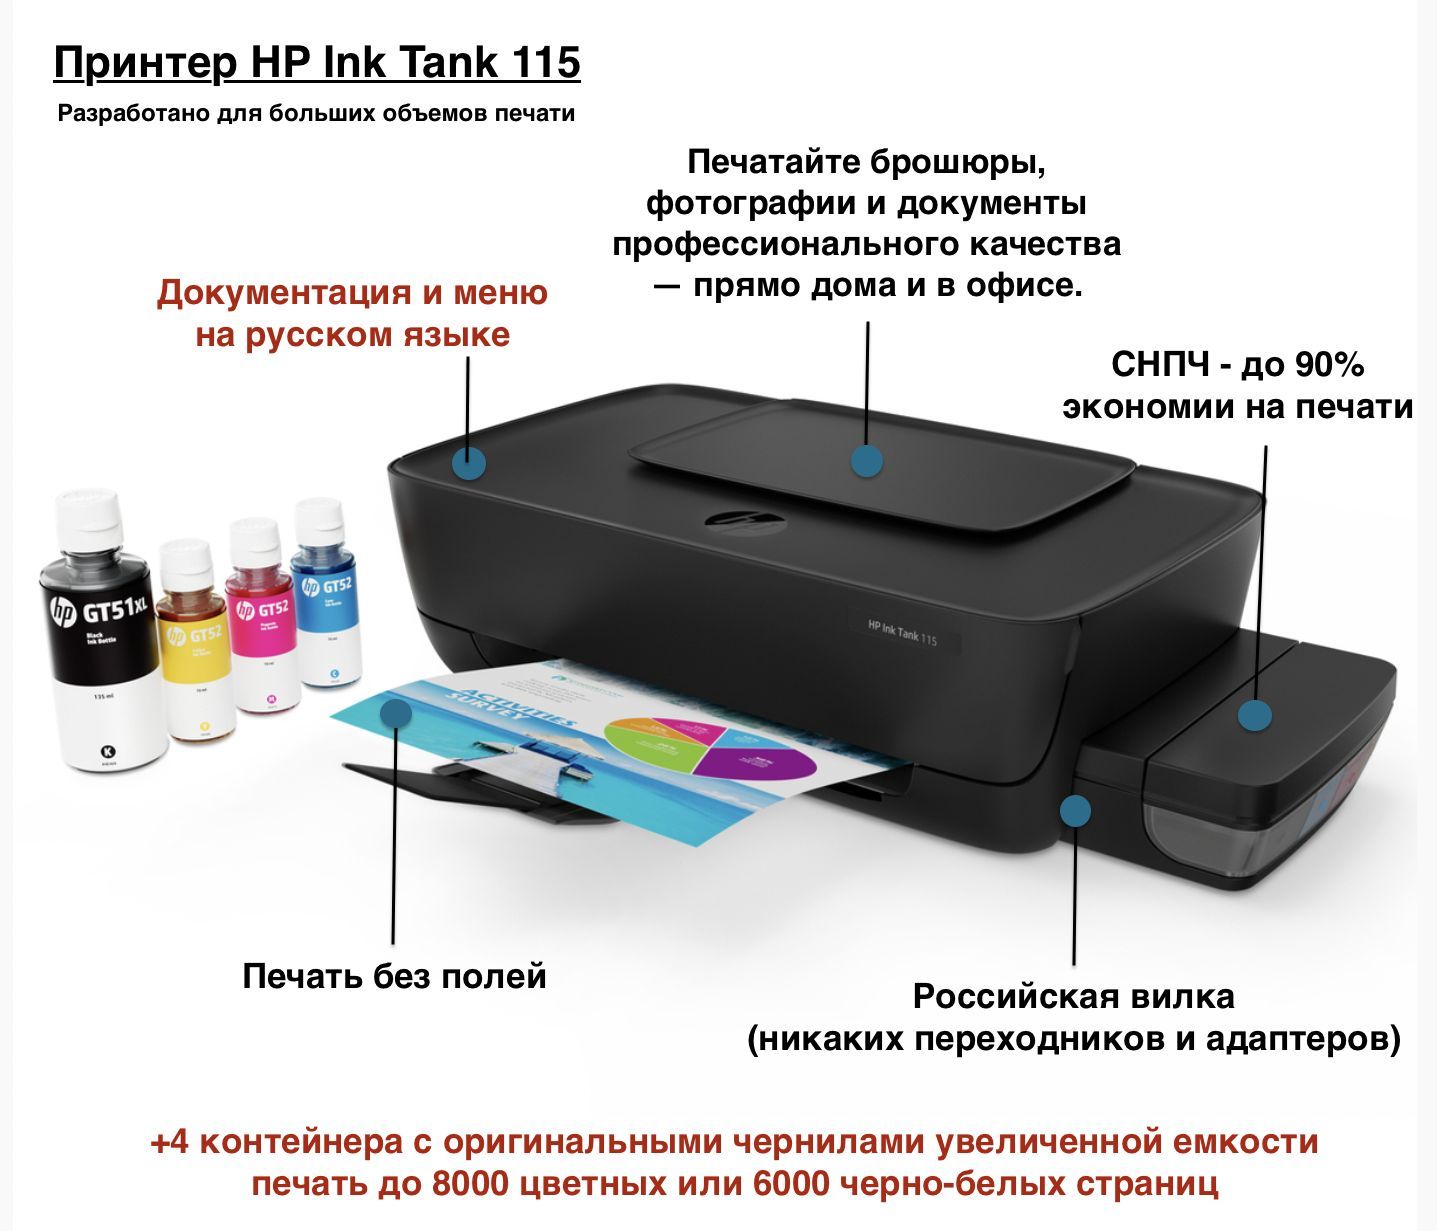 HP представила два компактных устройства для цветной печати